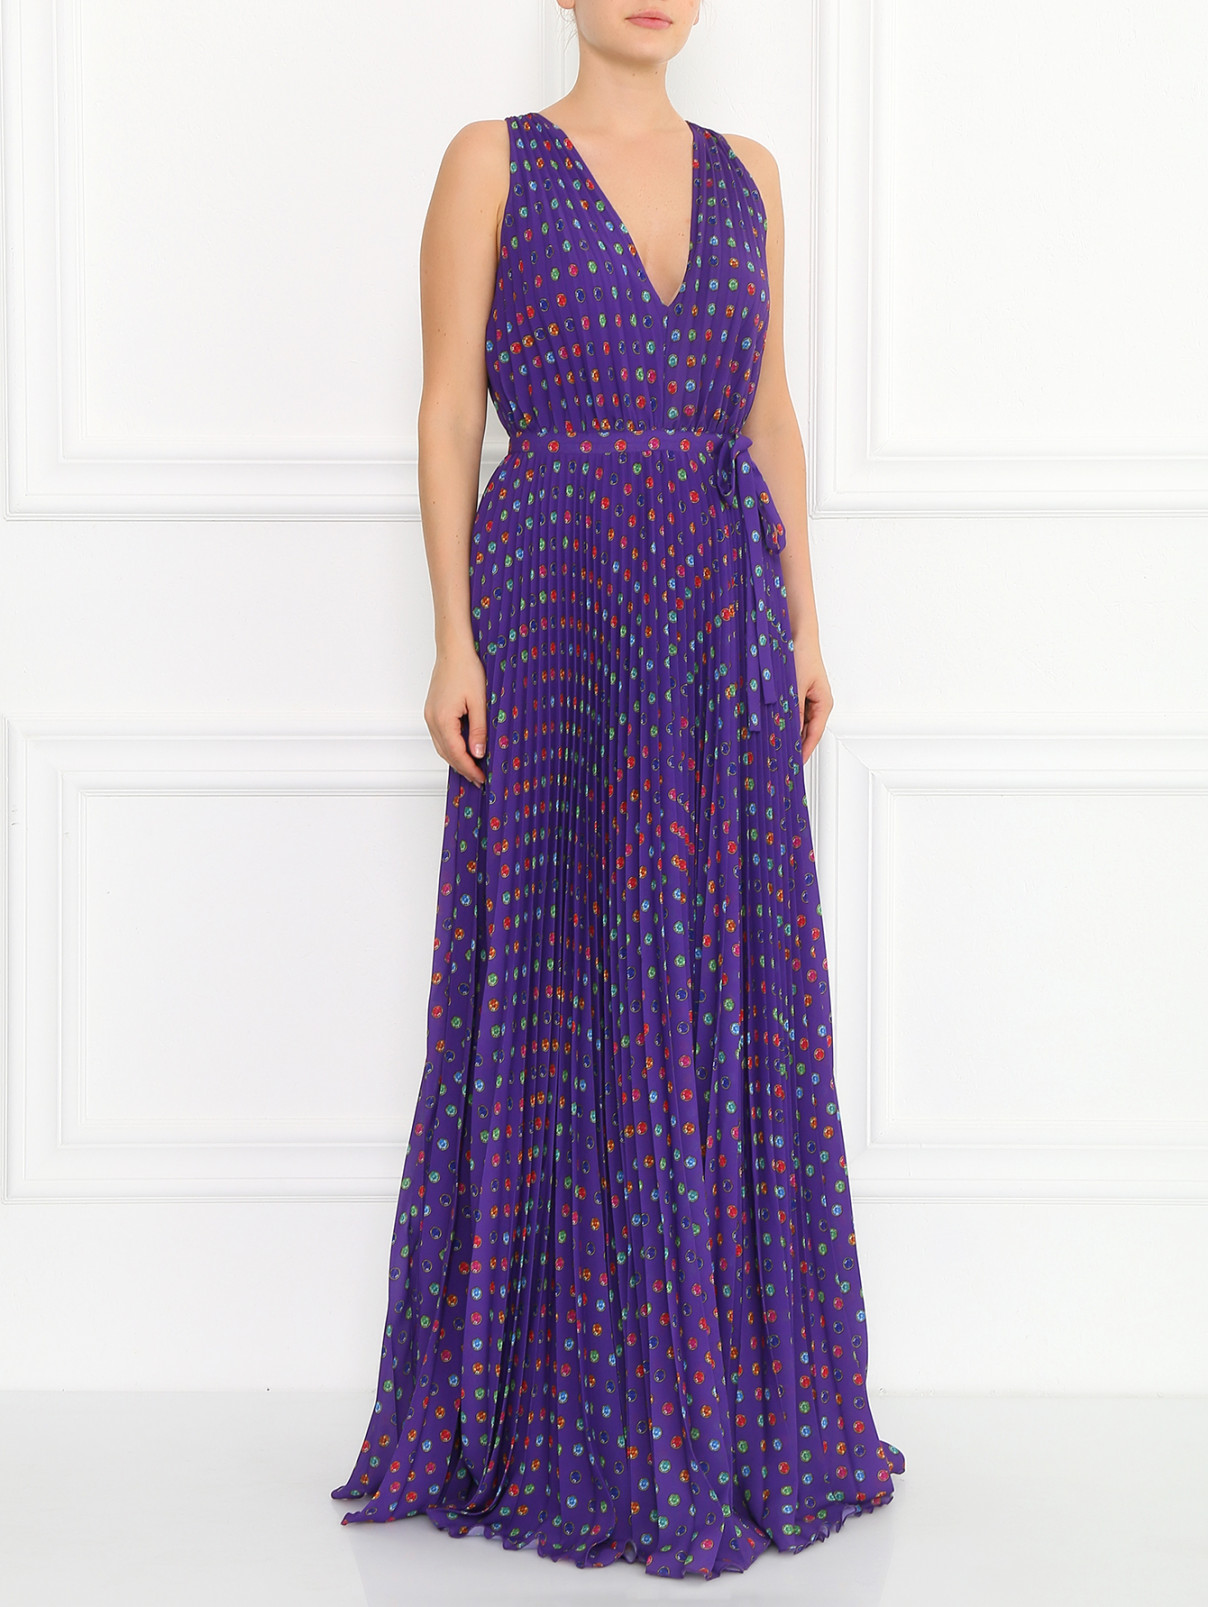 Плиссированное платье-макси с узором Moschino Boutique  –  Модель Общий вид  – Цвет:  Узор